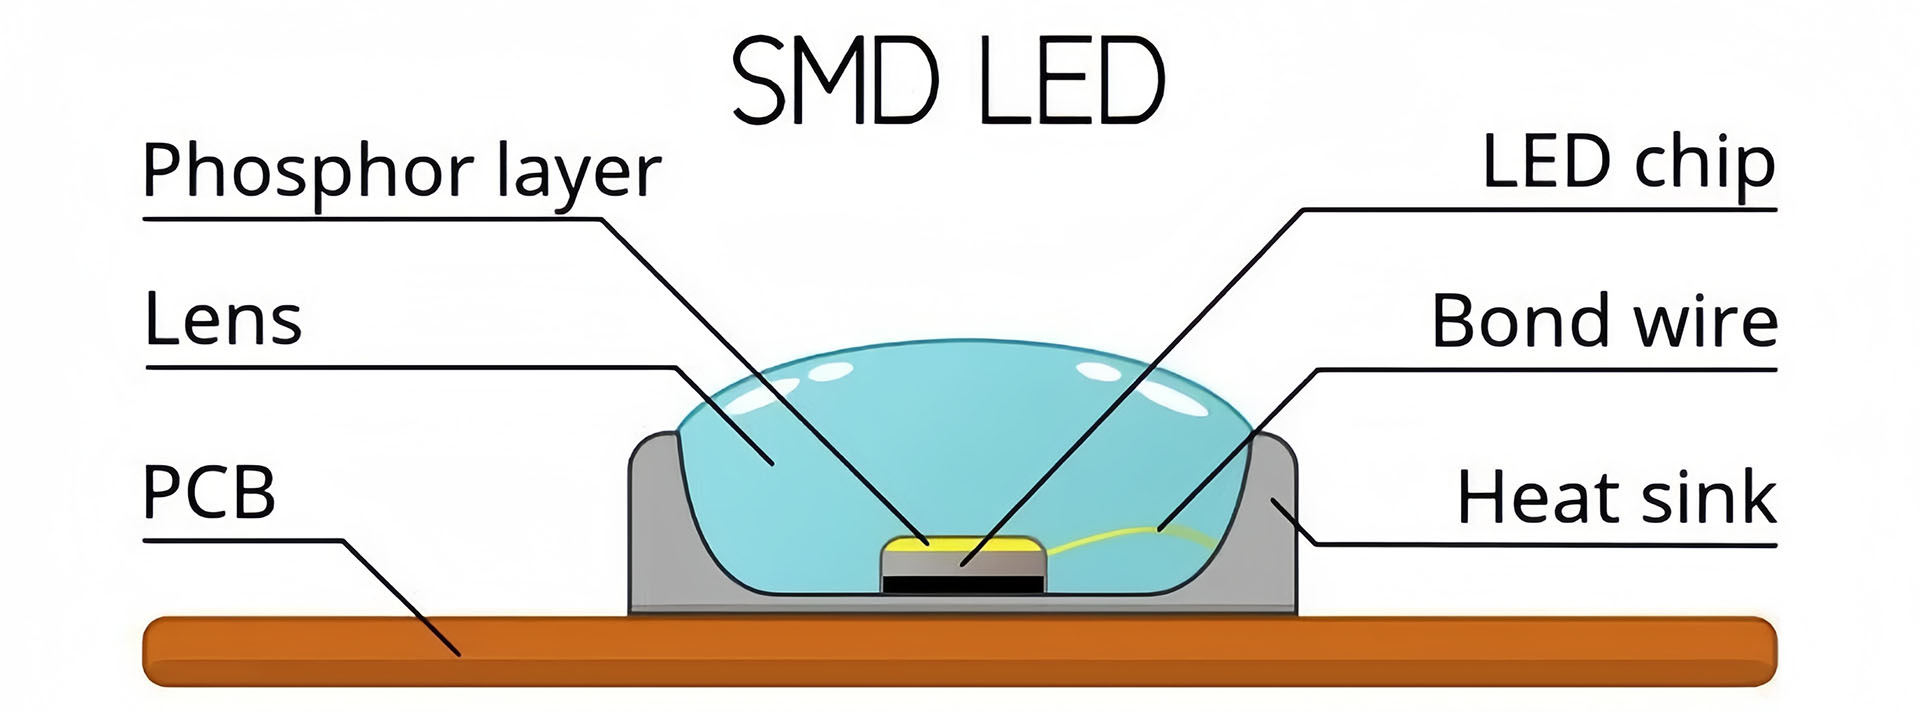 SMD LED Struture